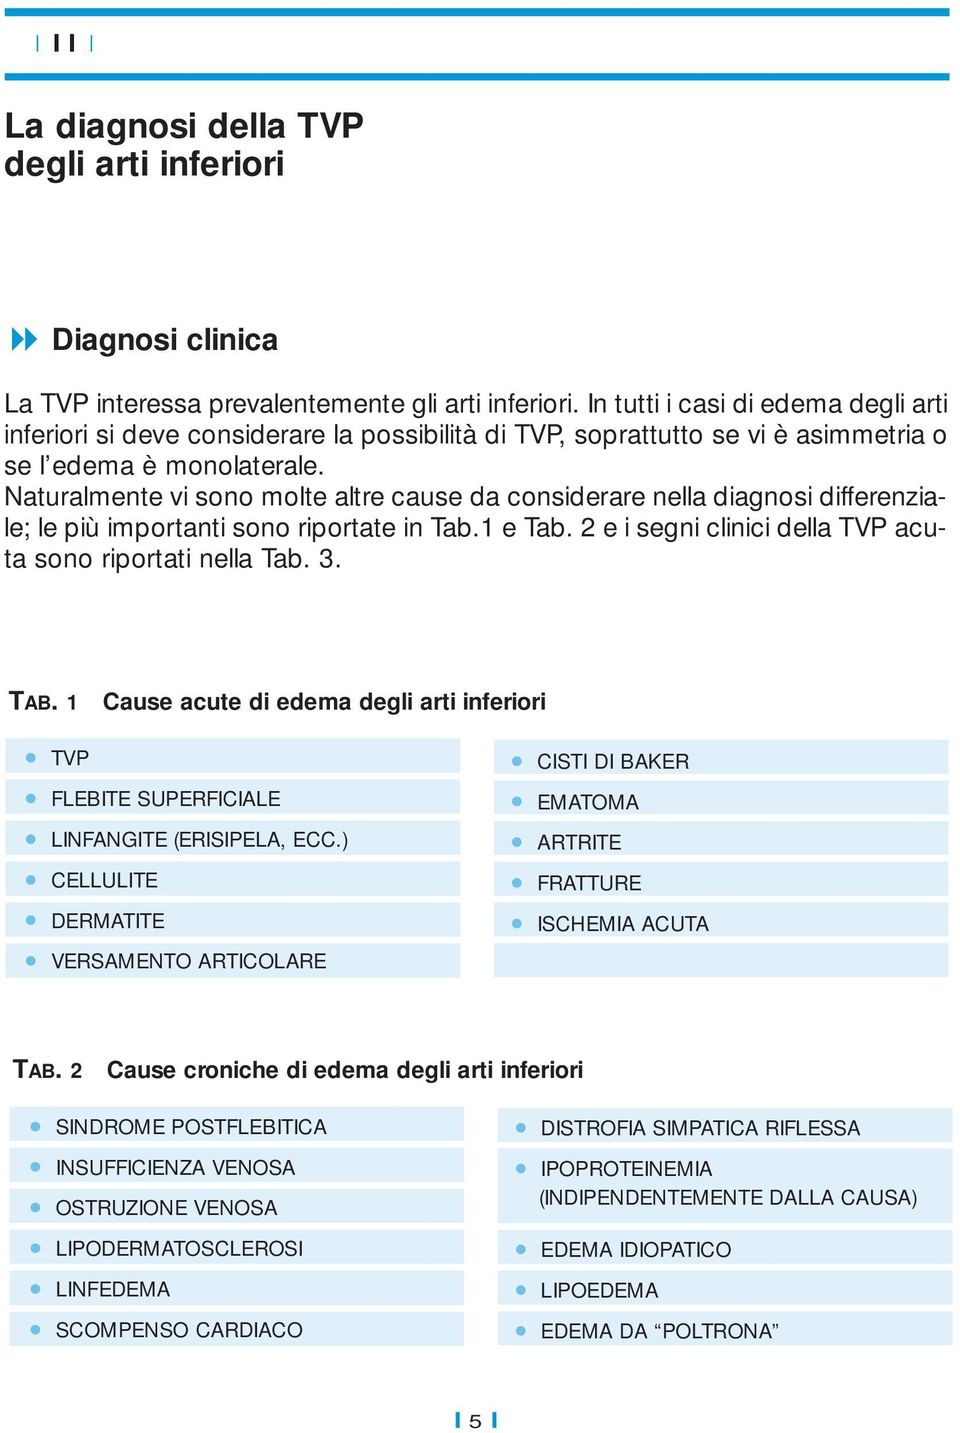 Naturalmente vi sono molte altre cause da considerare nella diagnosi differenziale; le più importanti sono riportate in Tab.1 e Tab. 2 e i segni clinici della TVP acuta sono riportati nella Tab. 3.